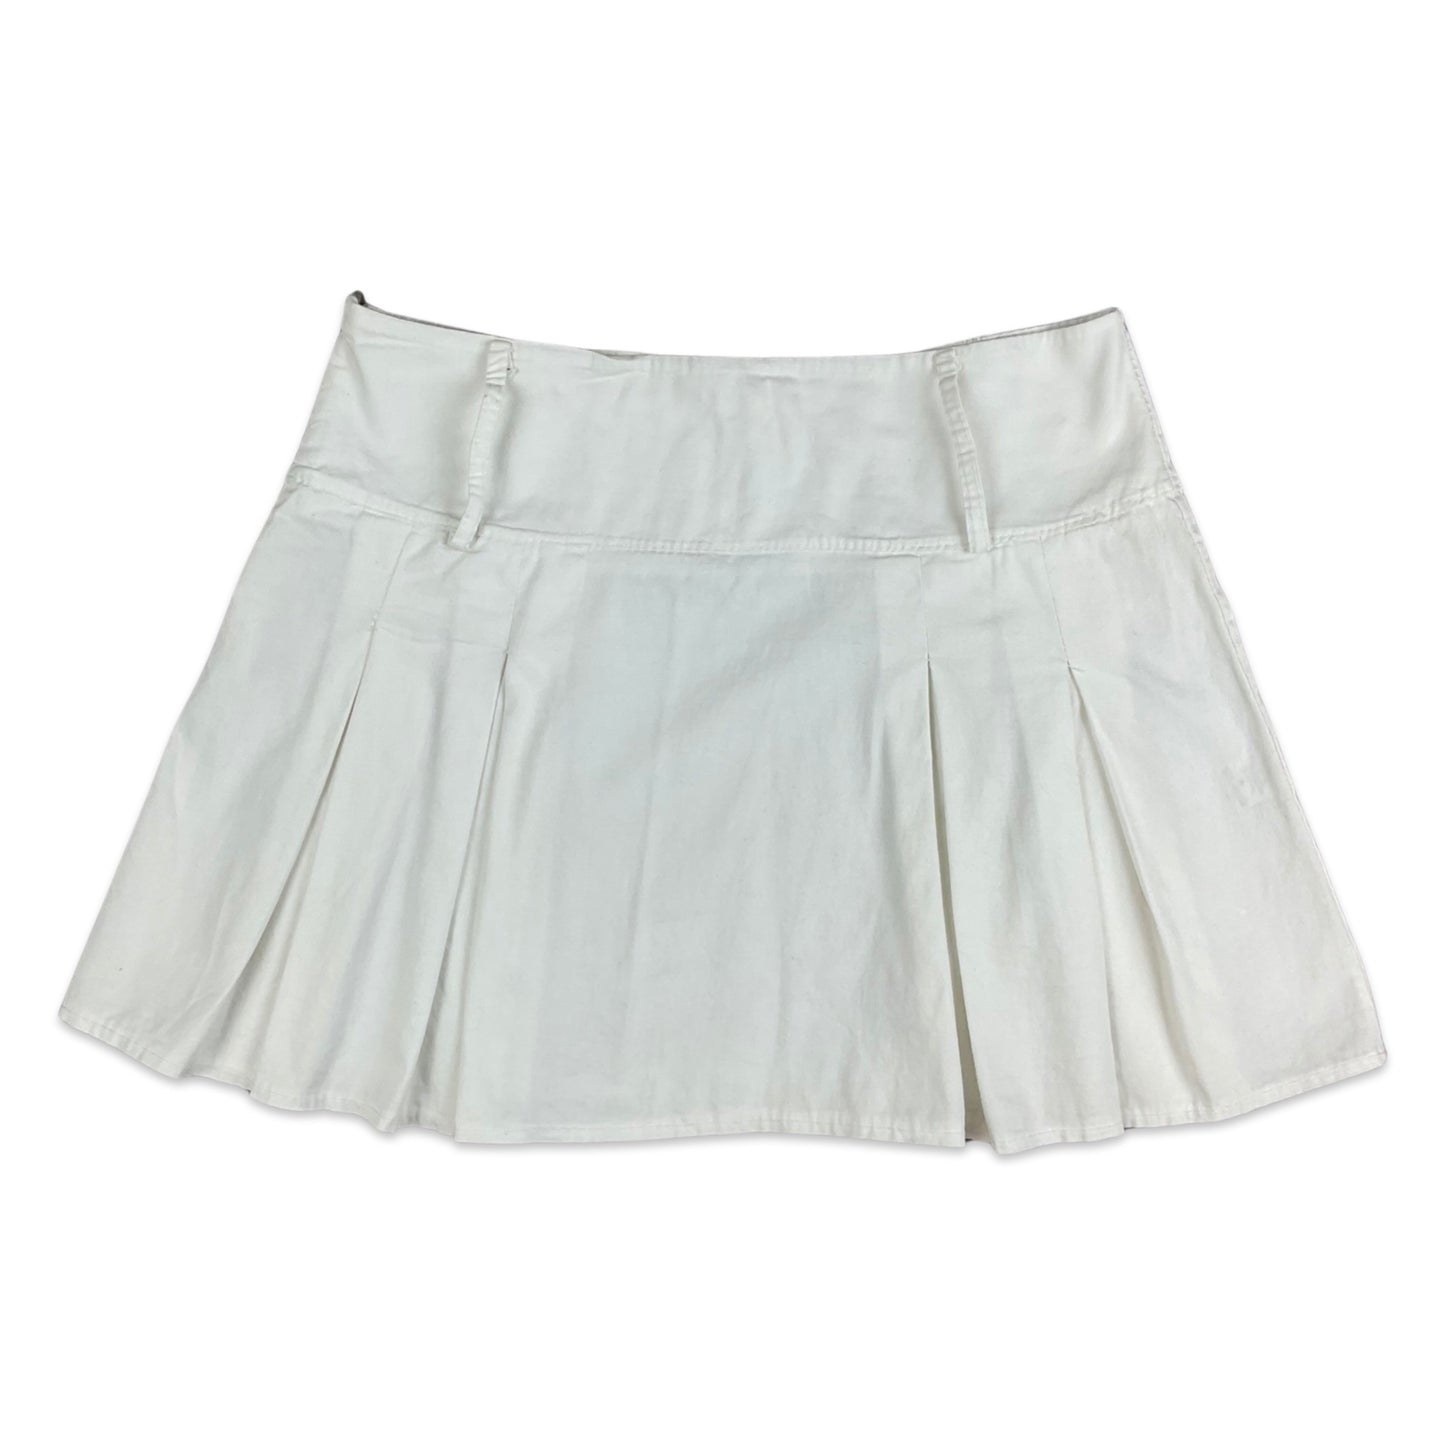 Vintage 90s White Pleated Mini Skirt 12 14